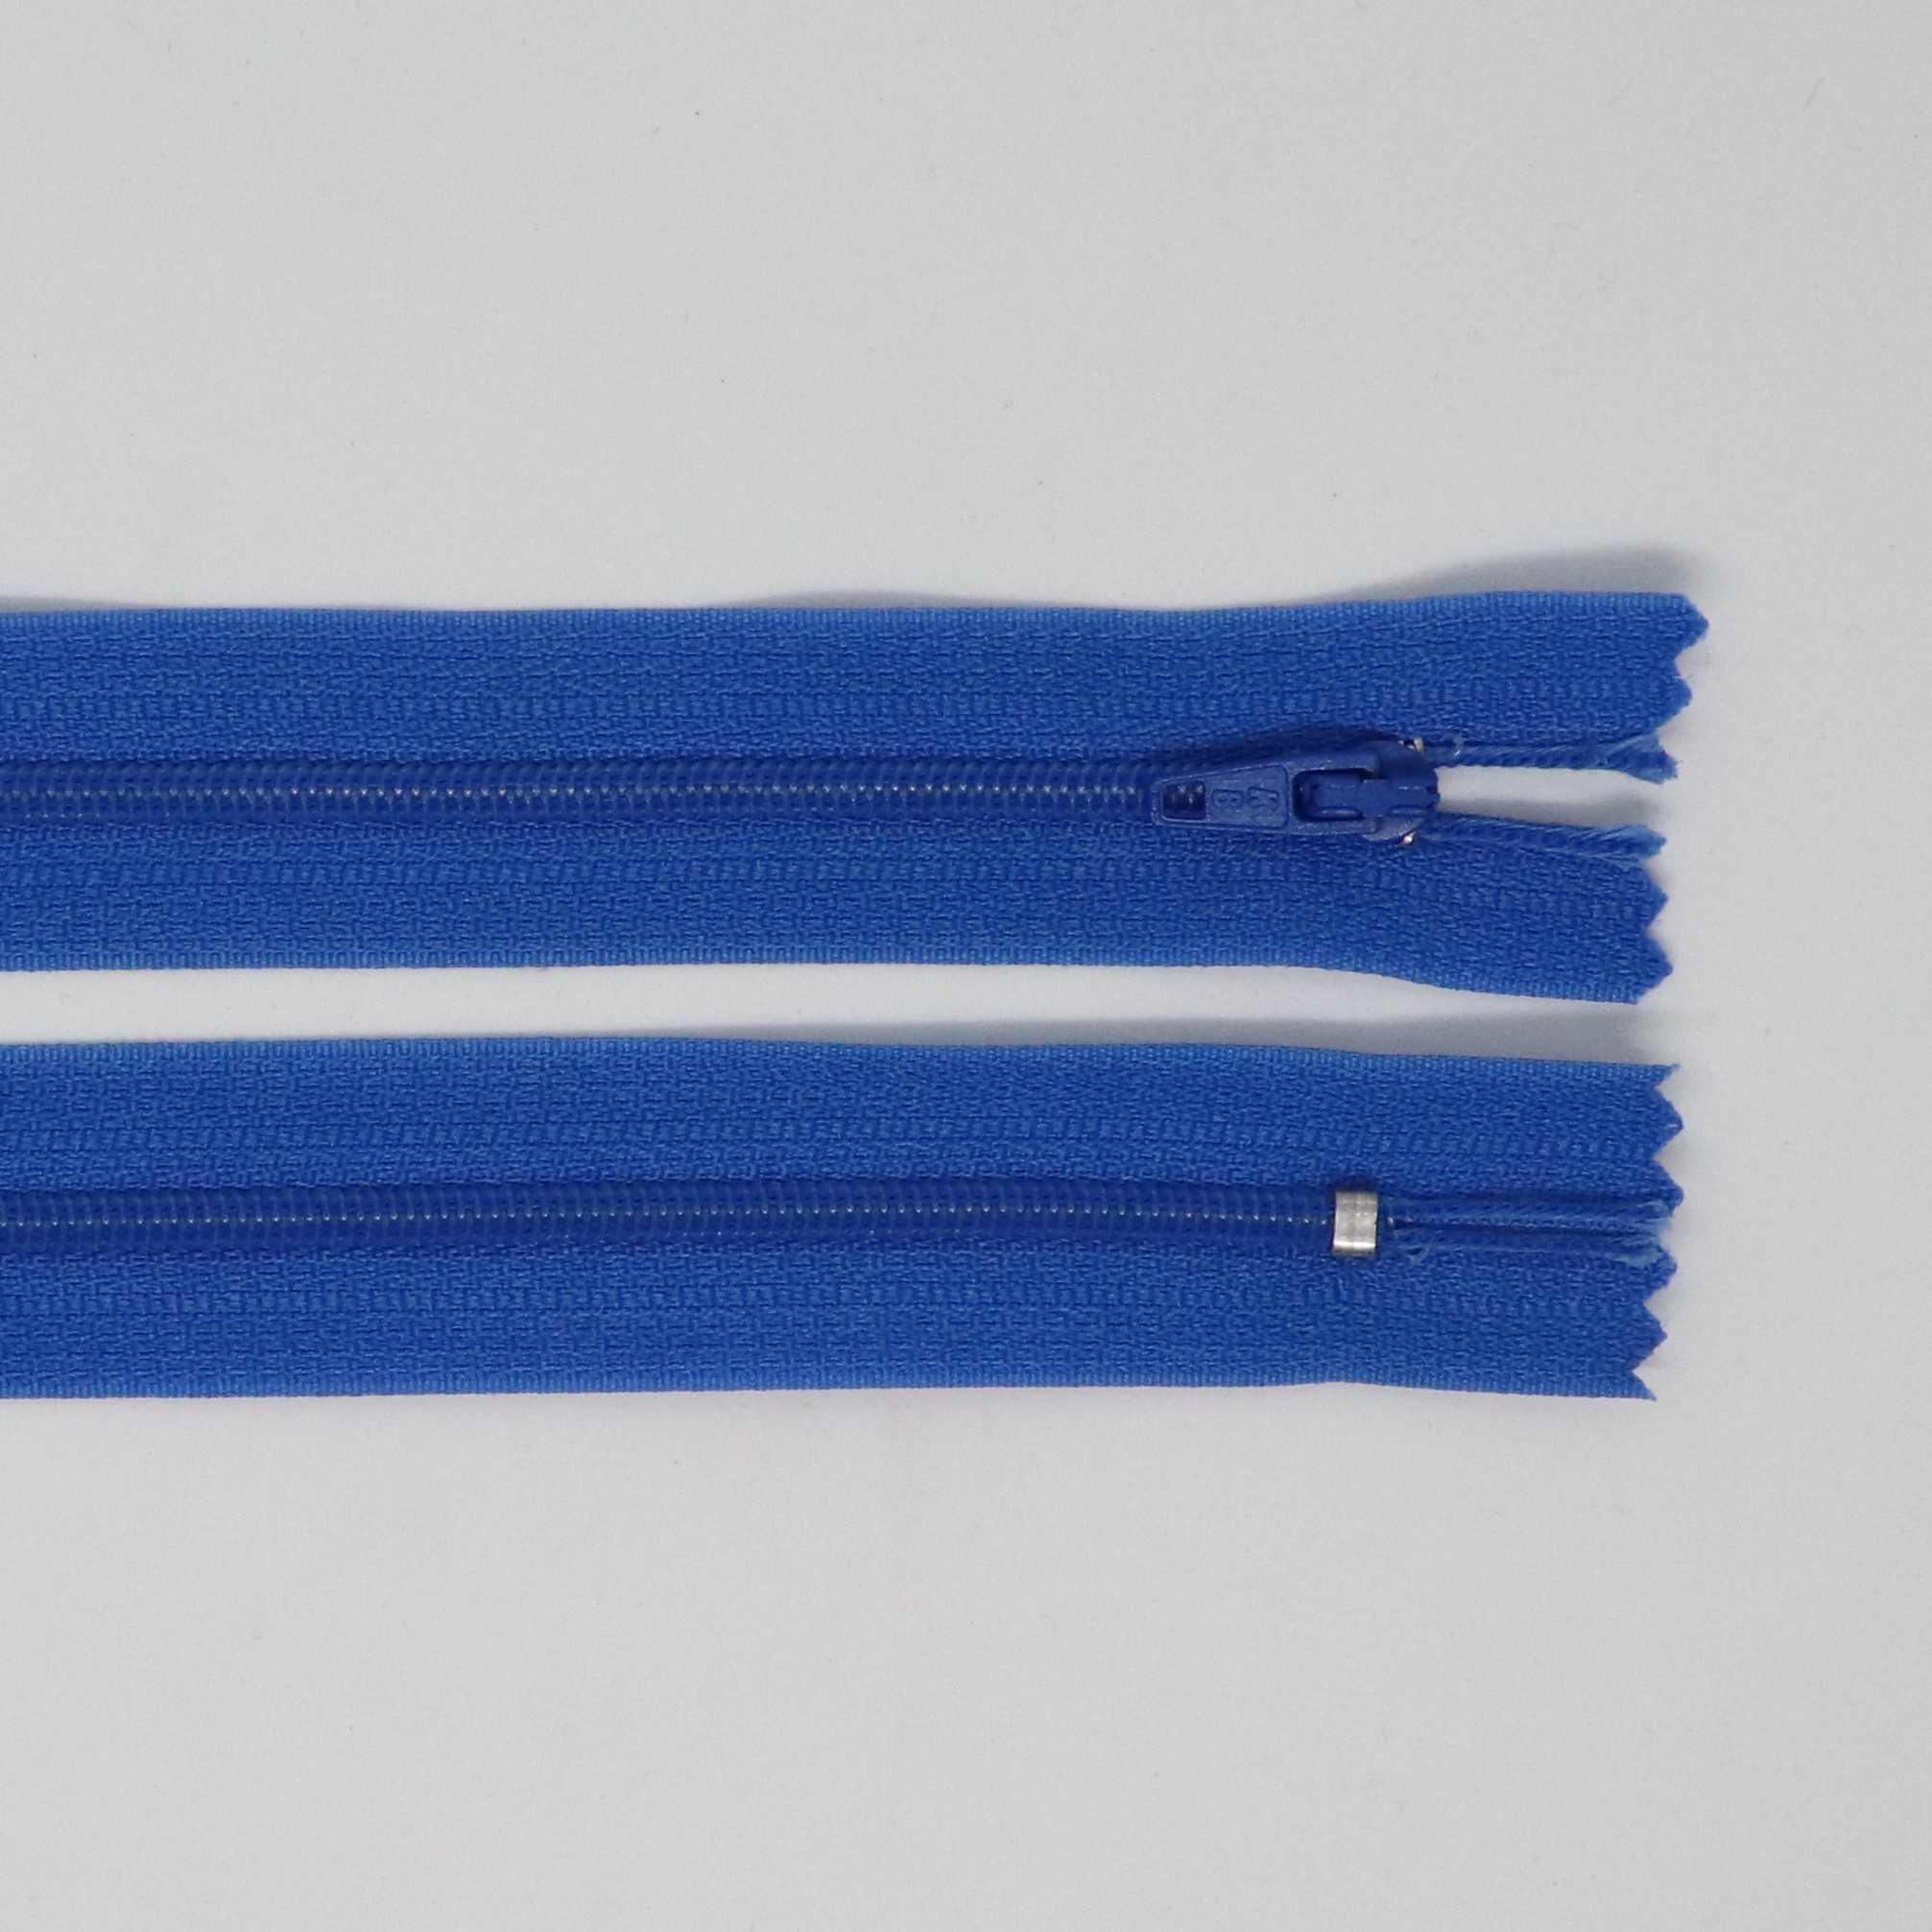 Spirálový zip, šíøe 3 mm, délka 60 cm, královsky modrá - zvìtšit obrázek